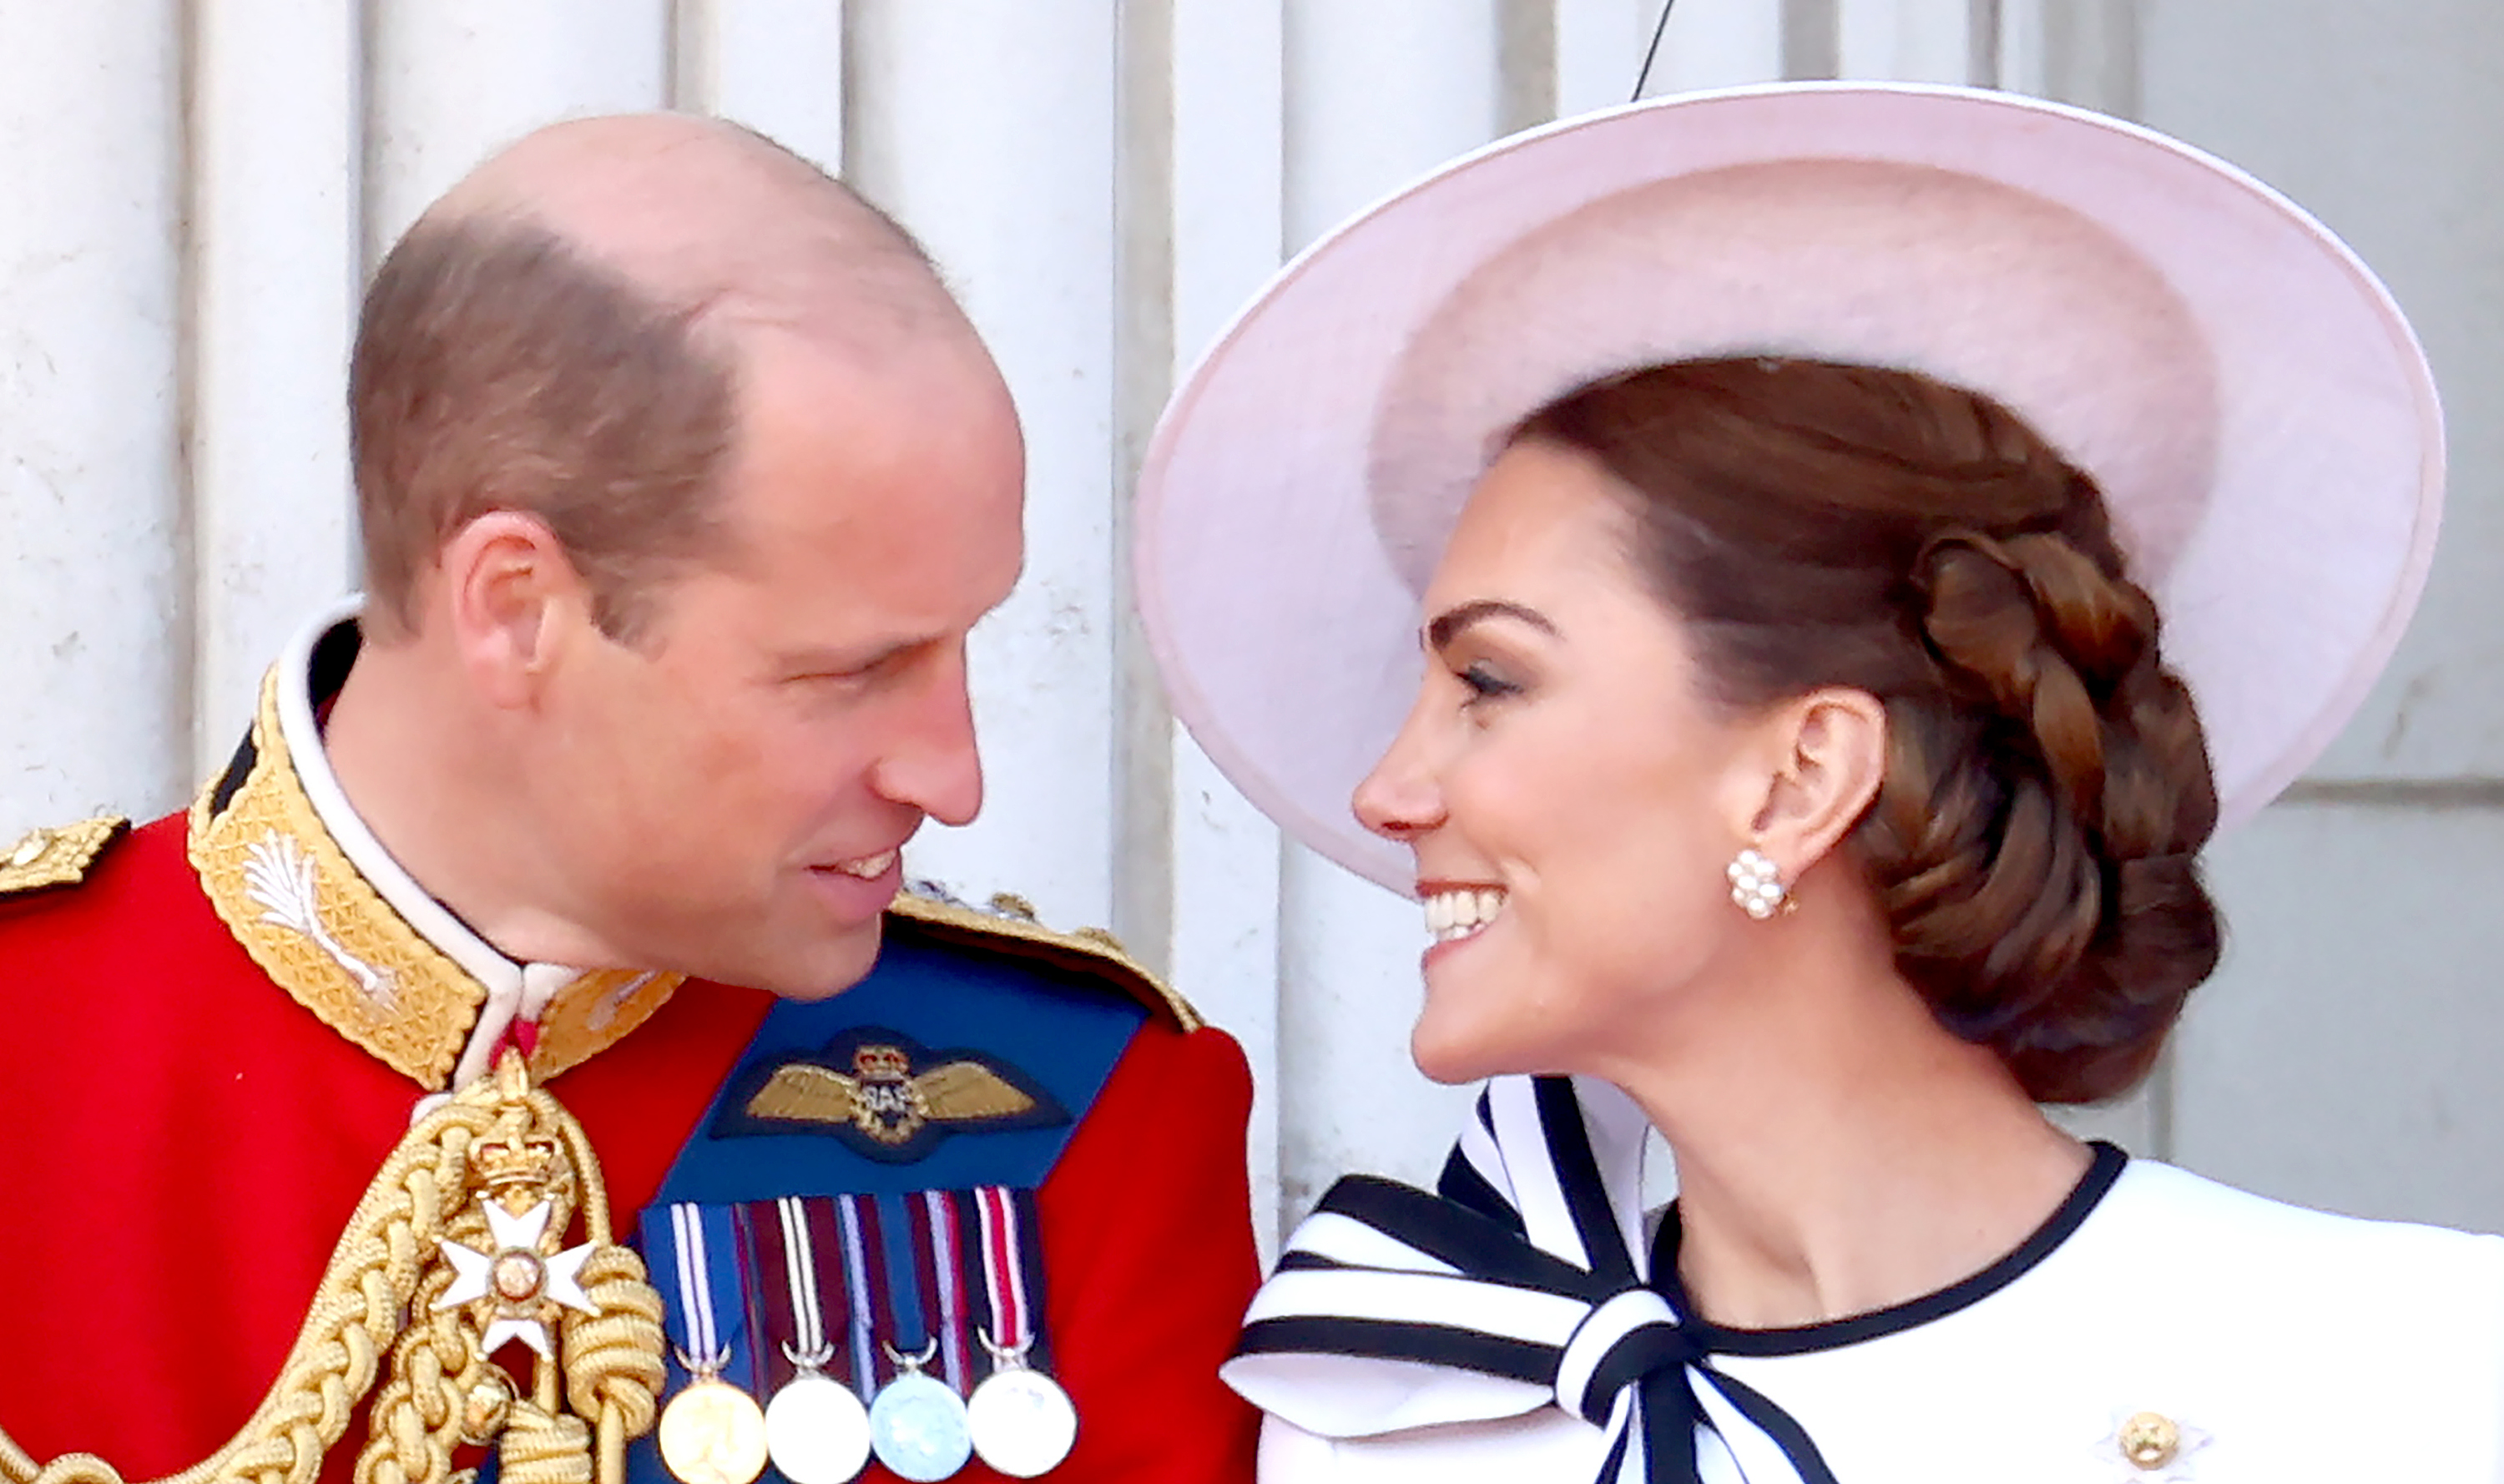 El príncipe William, príncipe de Gales, y Catherine, princesa de Gales, en el balcón durante el Trooping the Colour en el Palacio de Buckingham en Londres, Inglaterra, el 15 de junio de 2024. | Fuente: Getty Images